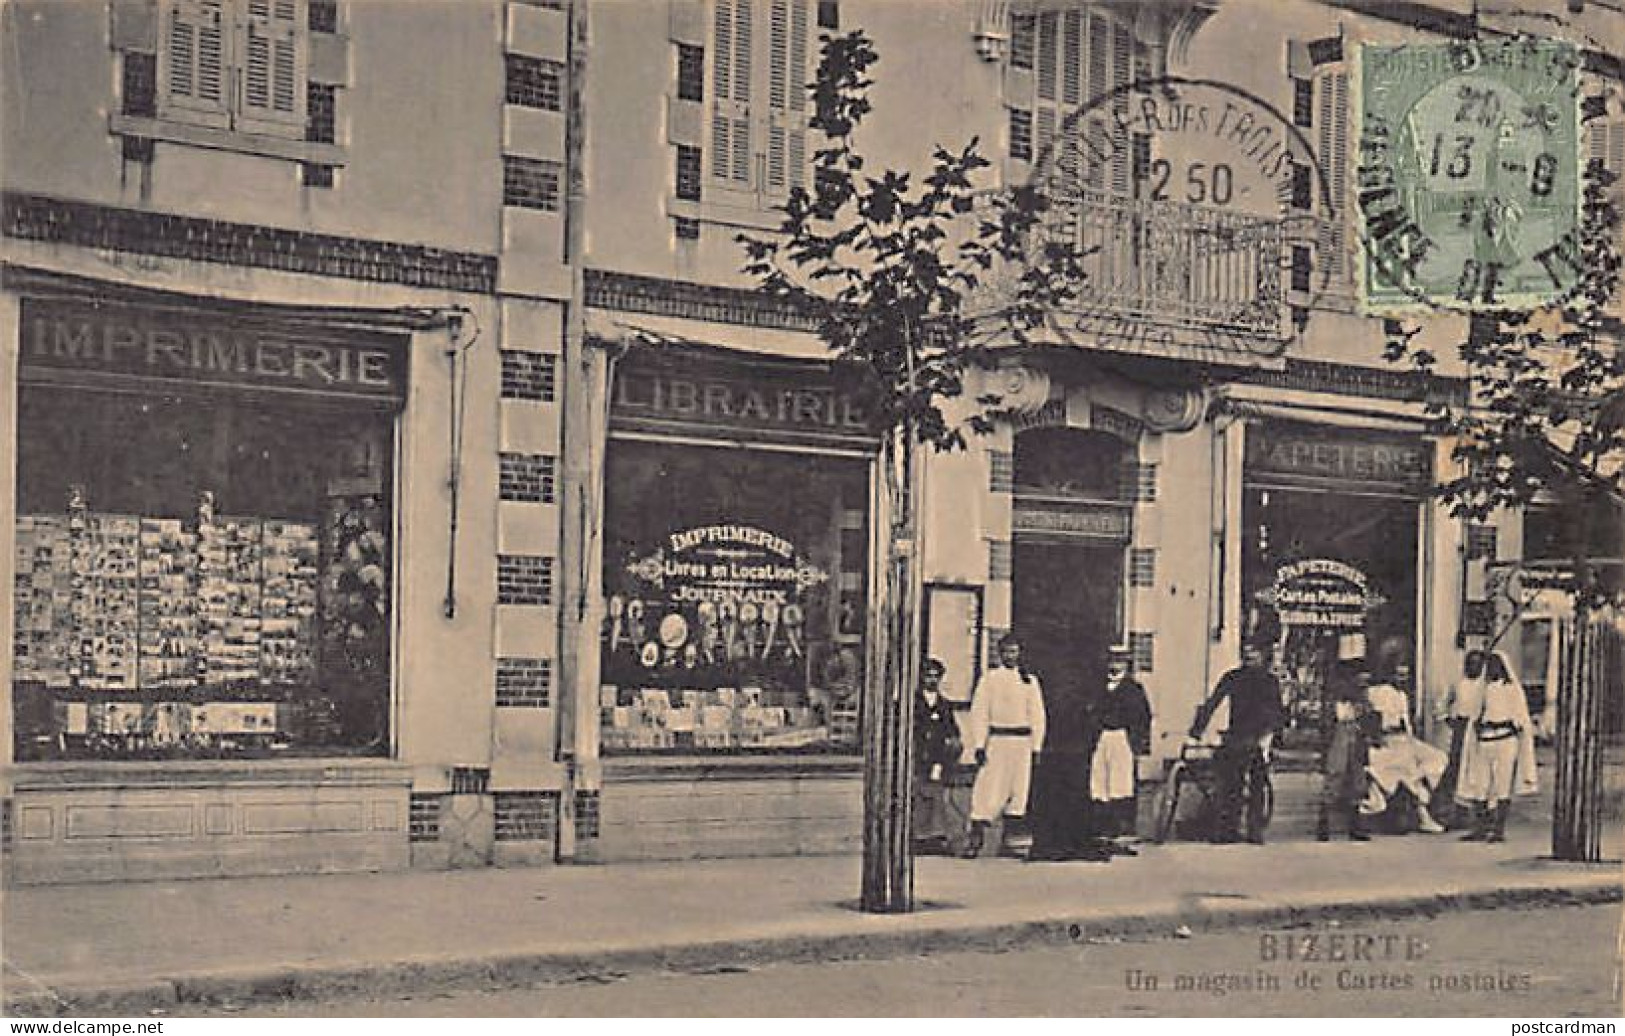 BIZERTE - Imprimerie Librairie Veuve Saint-Paul & Fils - Magasin De Cartes Postales - Ed. Veuve Saint-Paul & Fils  - Tunisie